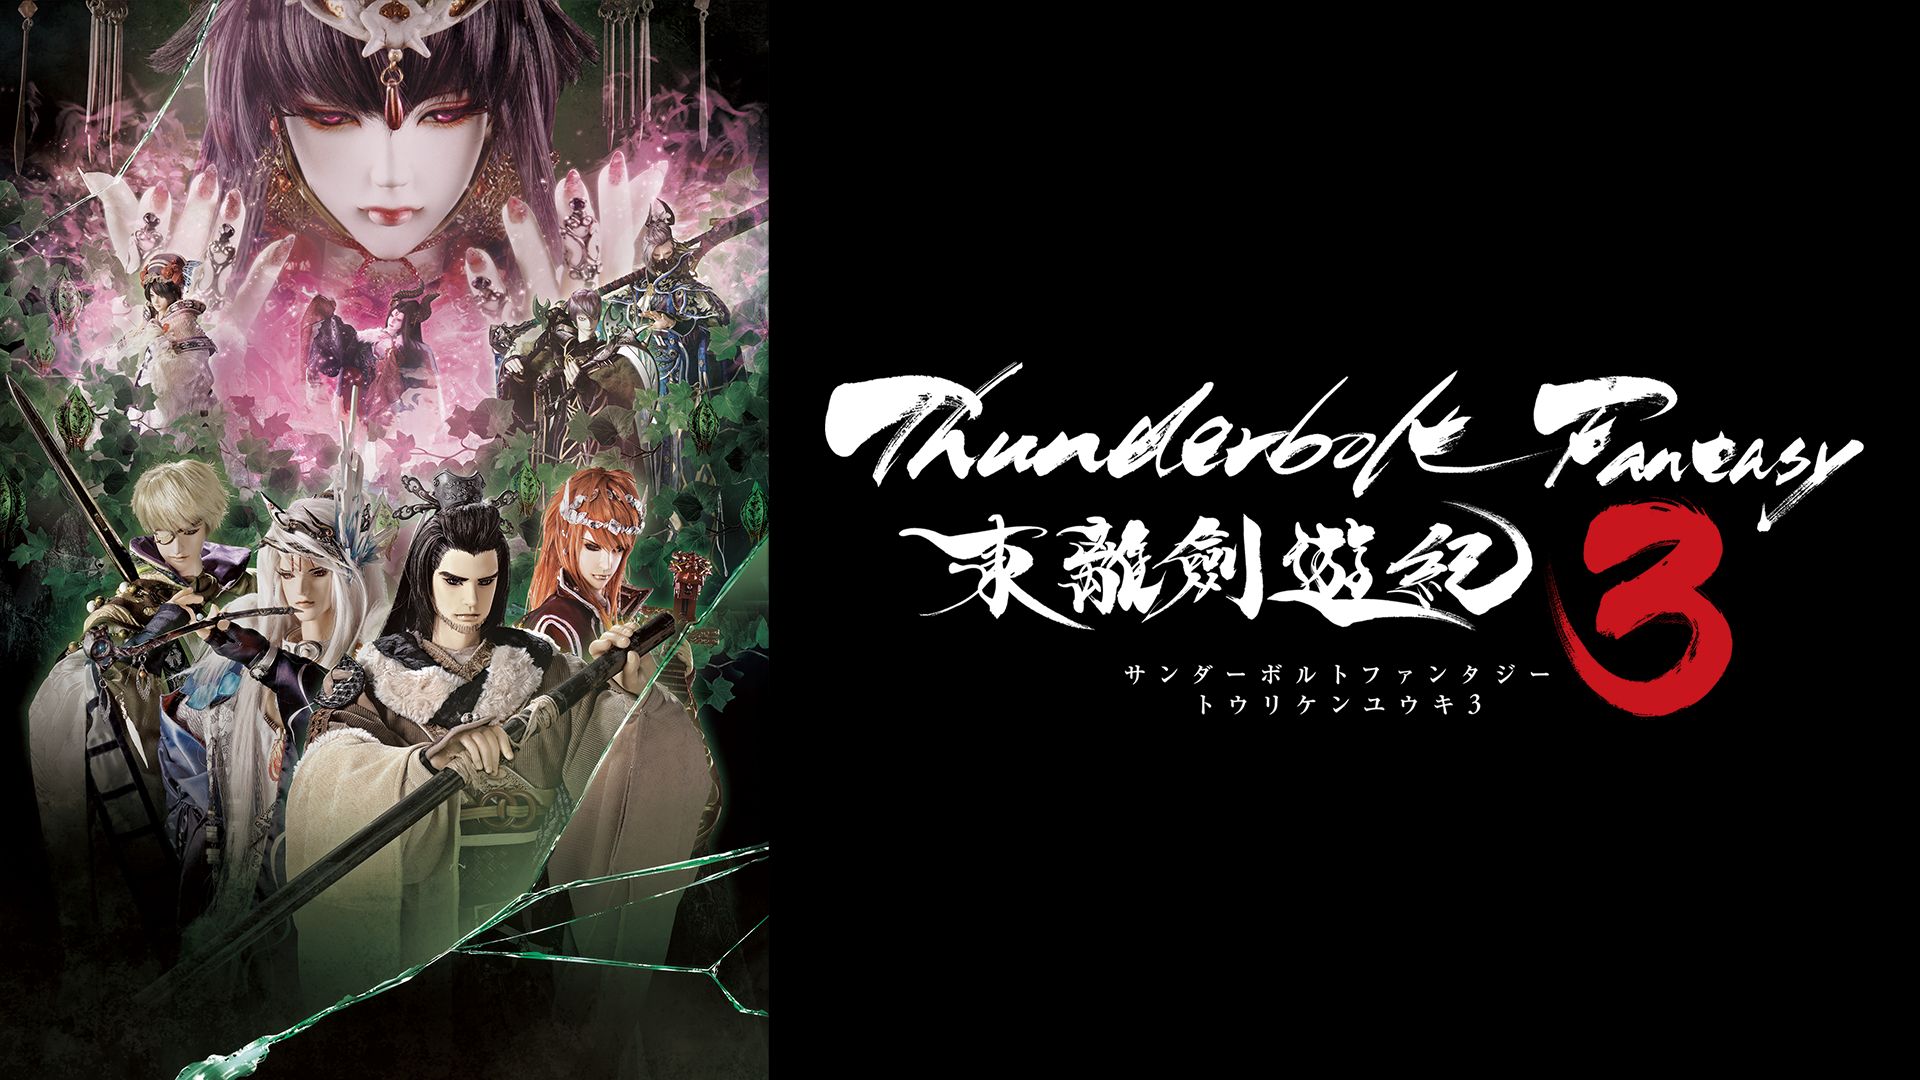 Thunderbolt Fantasy 東離剣遊紀3